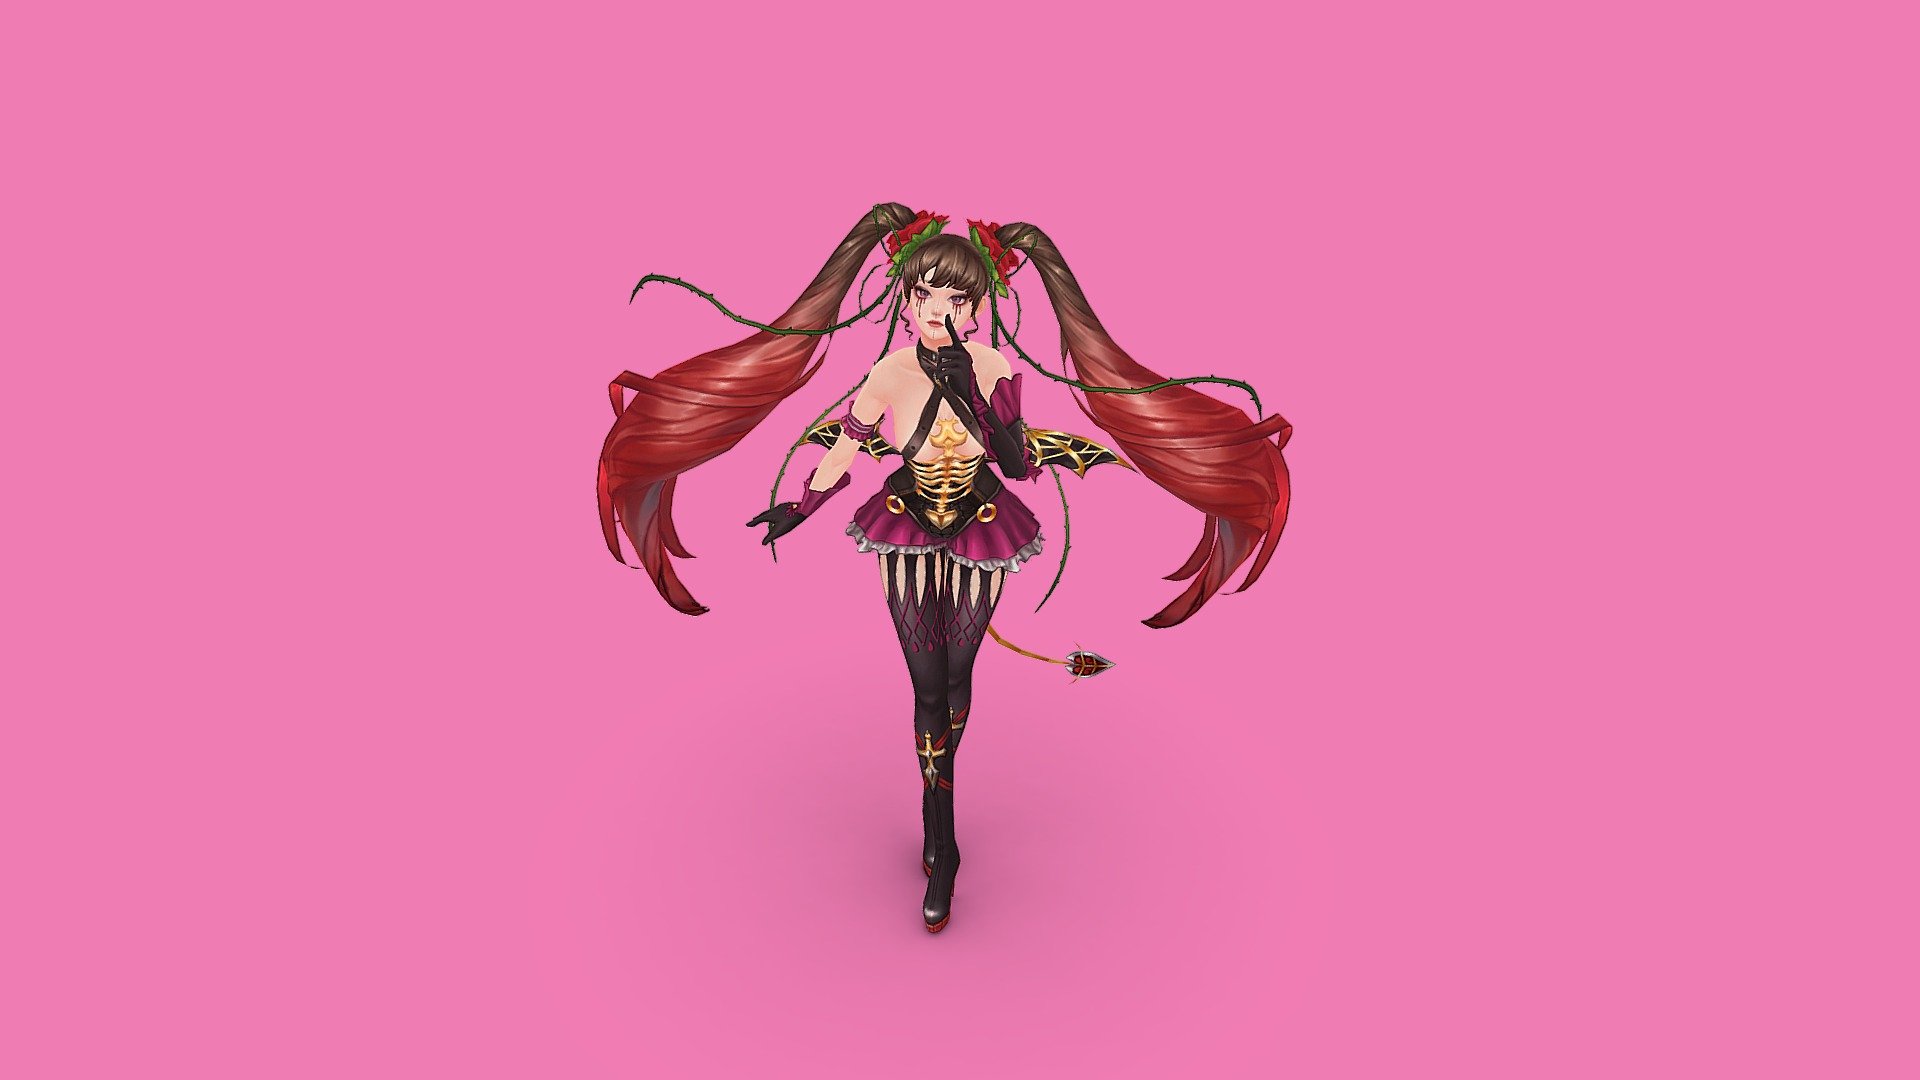 Devil rose girl hanpainted 3d - 3D model by wwwmellowww 3d model